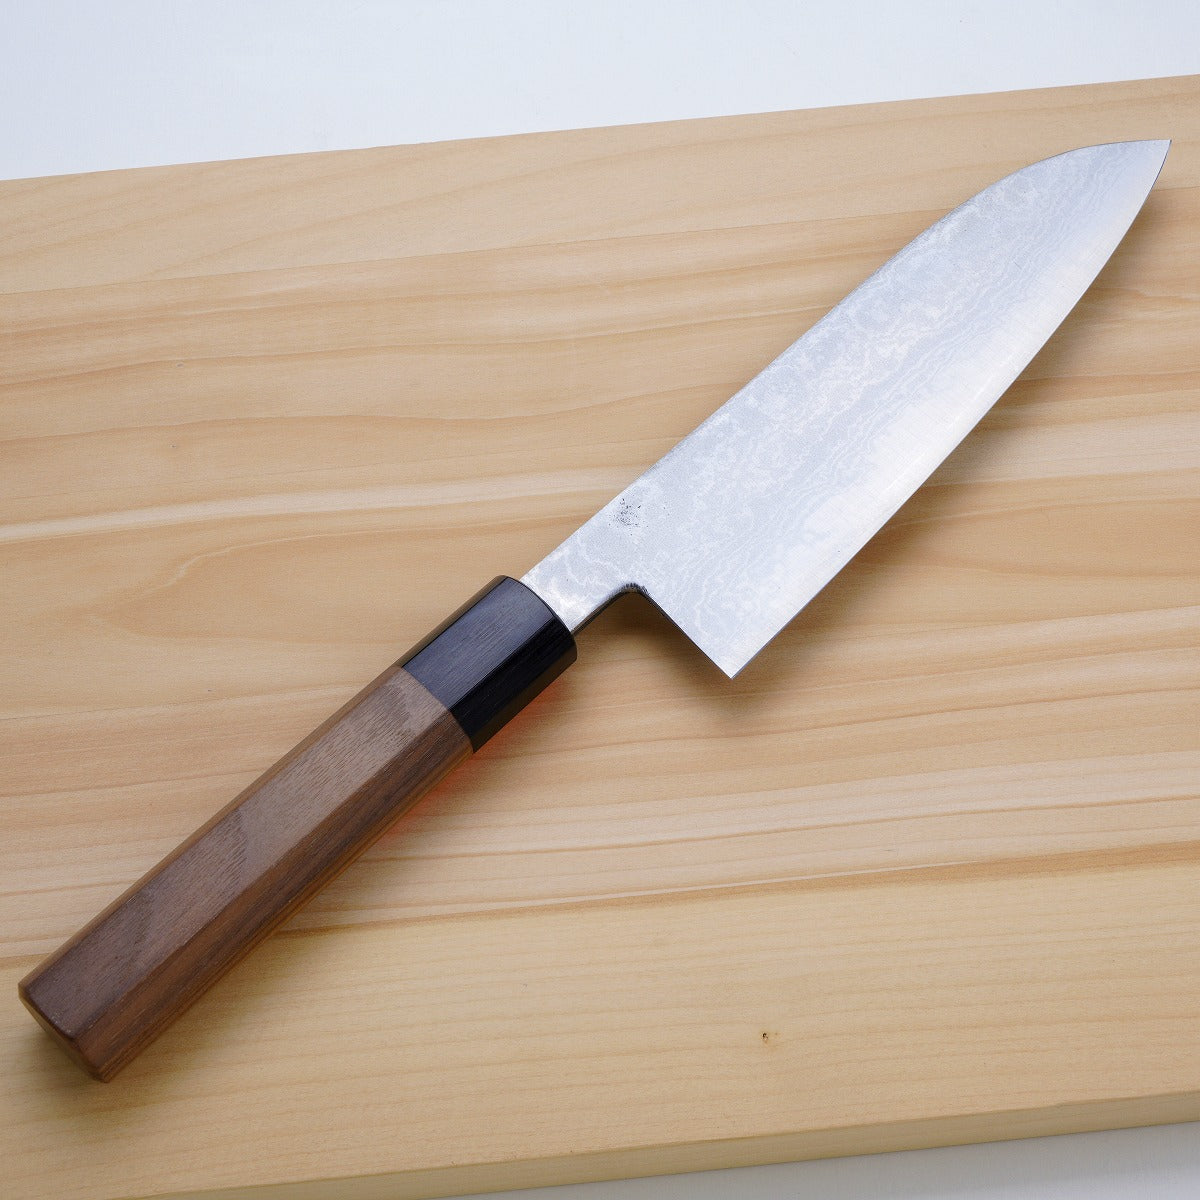 三德刀 (多用途廚刀) 青紙鋼2號, 大馬士革模樣, 165mm